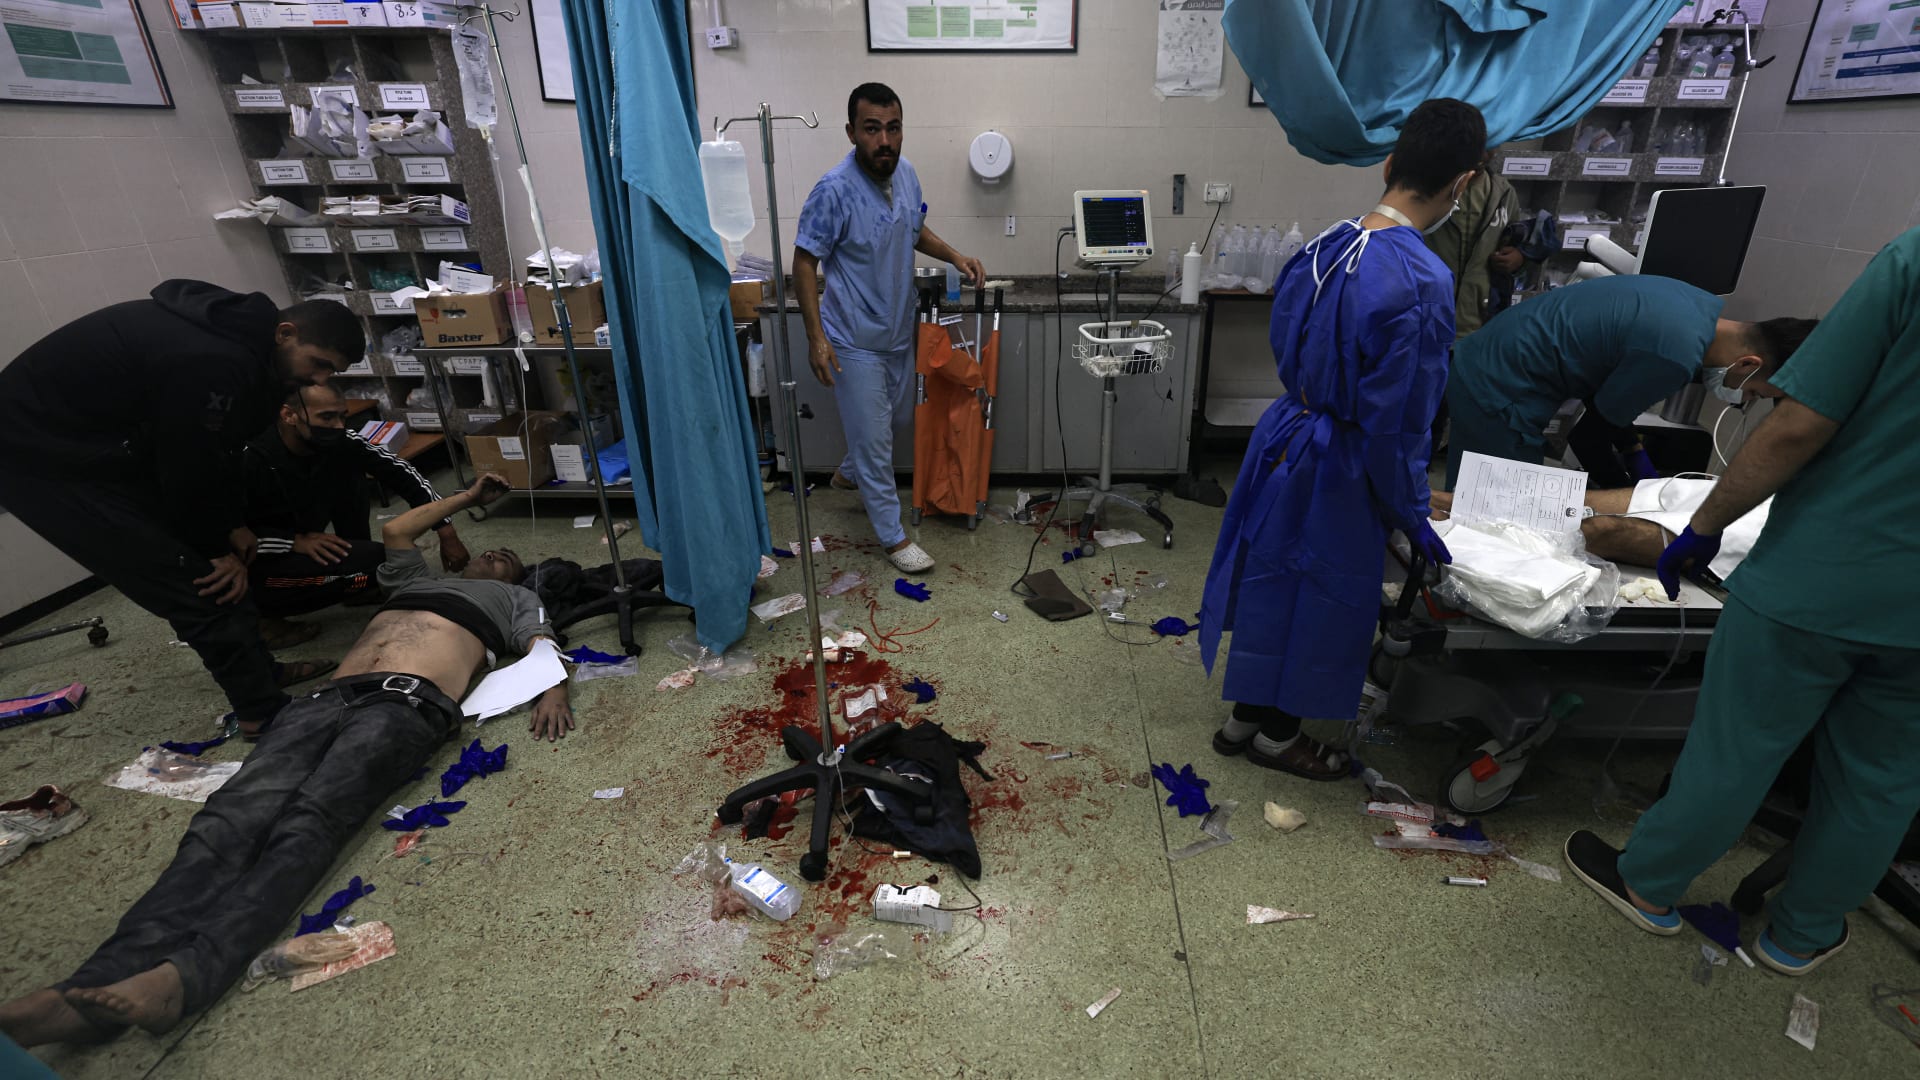 "لا مكان آمن في غزة" مع استمرار الحرب.. والأمم المتحدة: الناس فقدوا كل شيء